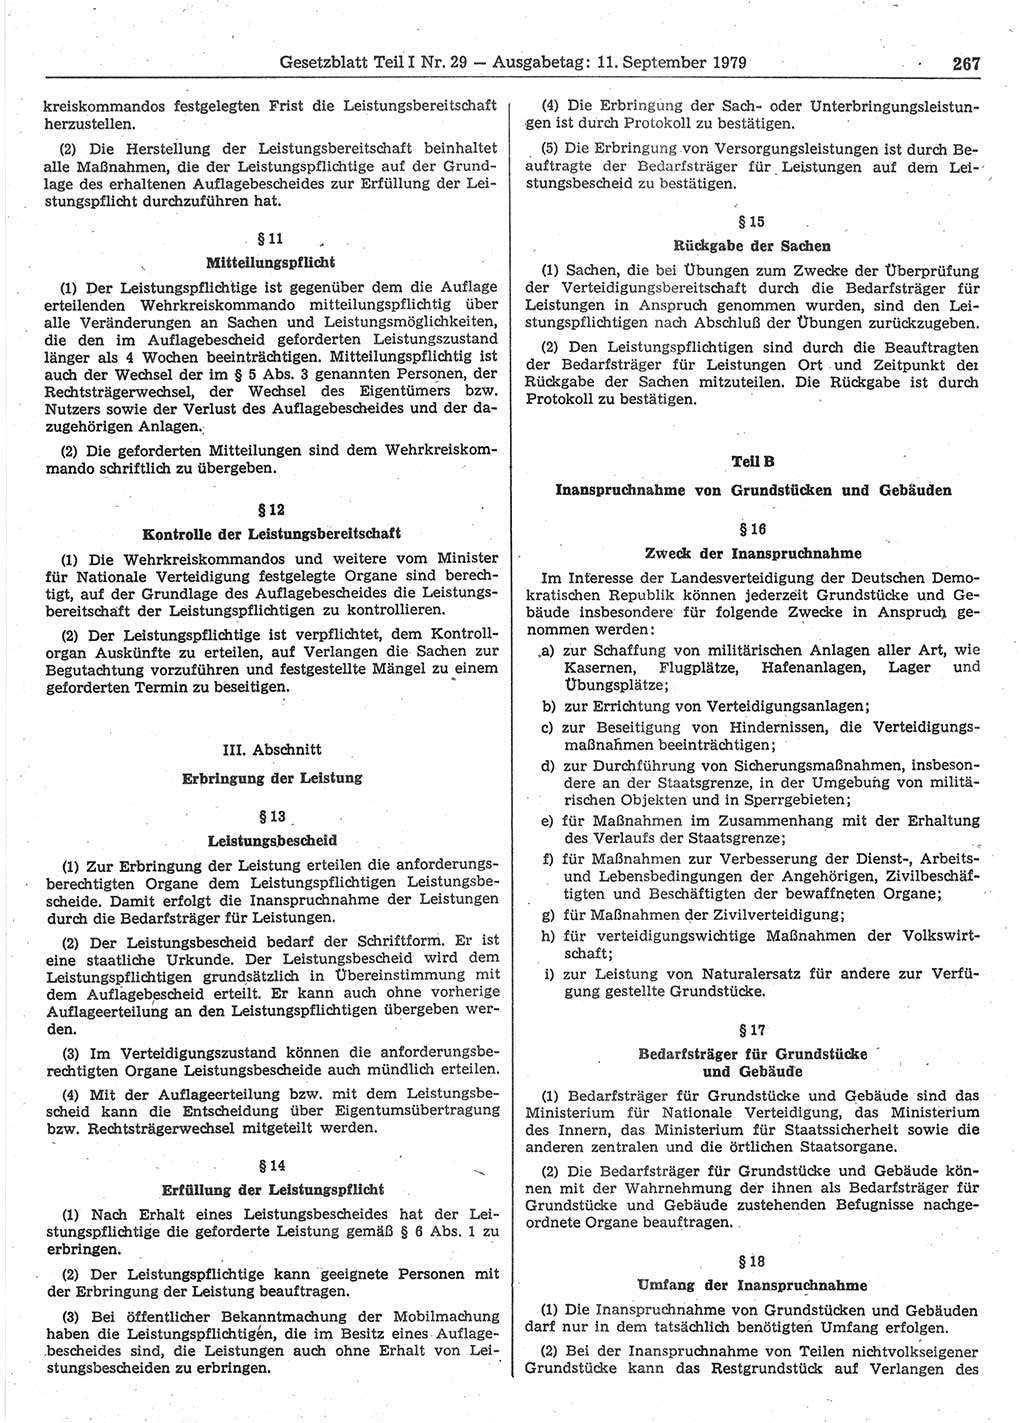 Gesetzblatt (GBl.) der Deutschen Demokratischen Republik (DDR) Teil Ⅰ 1979, Seite 267 (GBl. DDR Ⅰ 1979, S. 267)